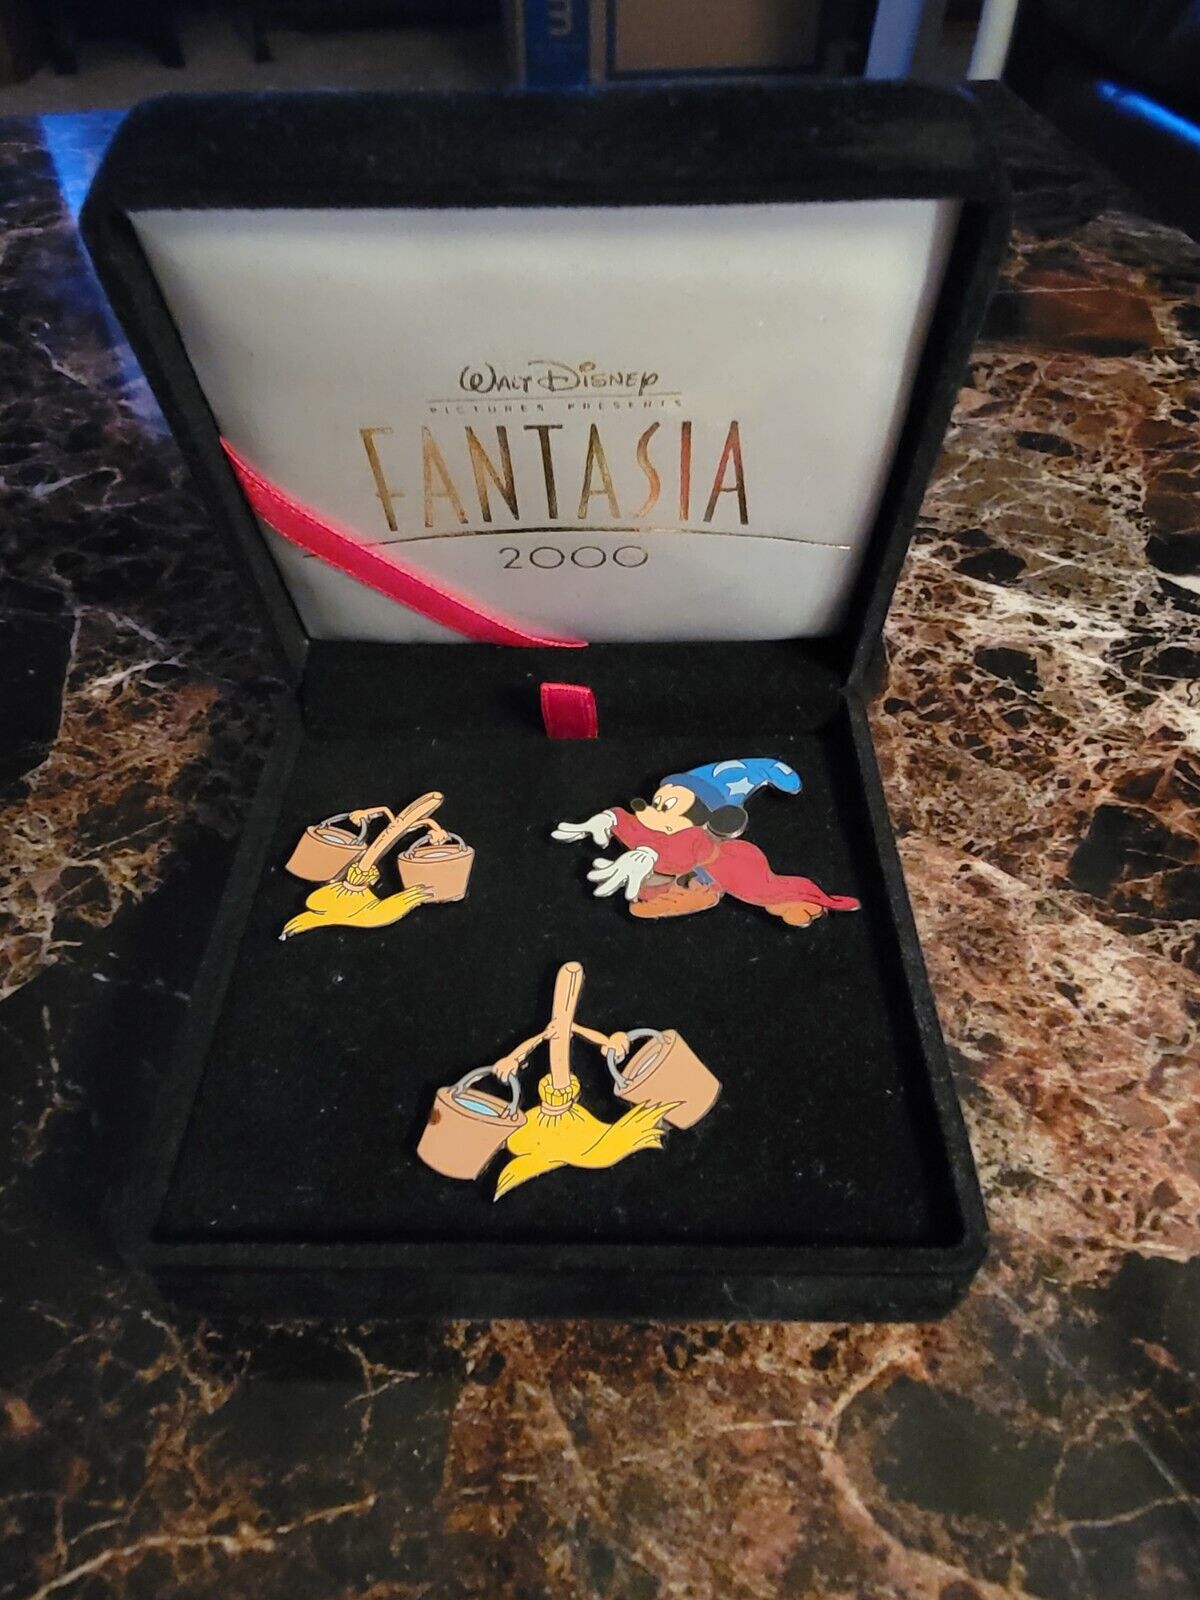 Disney Fantasia 2000 Sorcerer's Apprentice White Glove Mickey LE Pin Set in Box